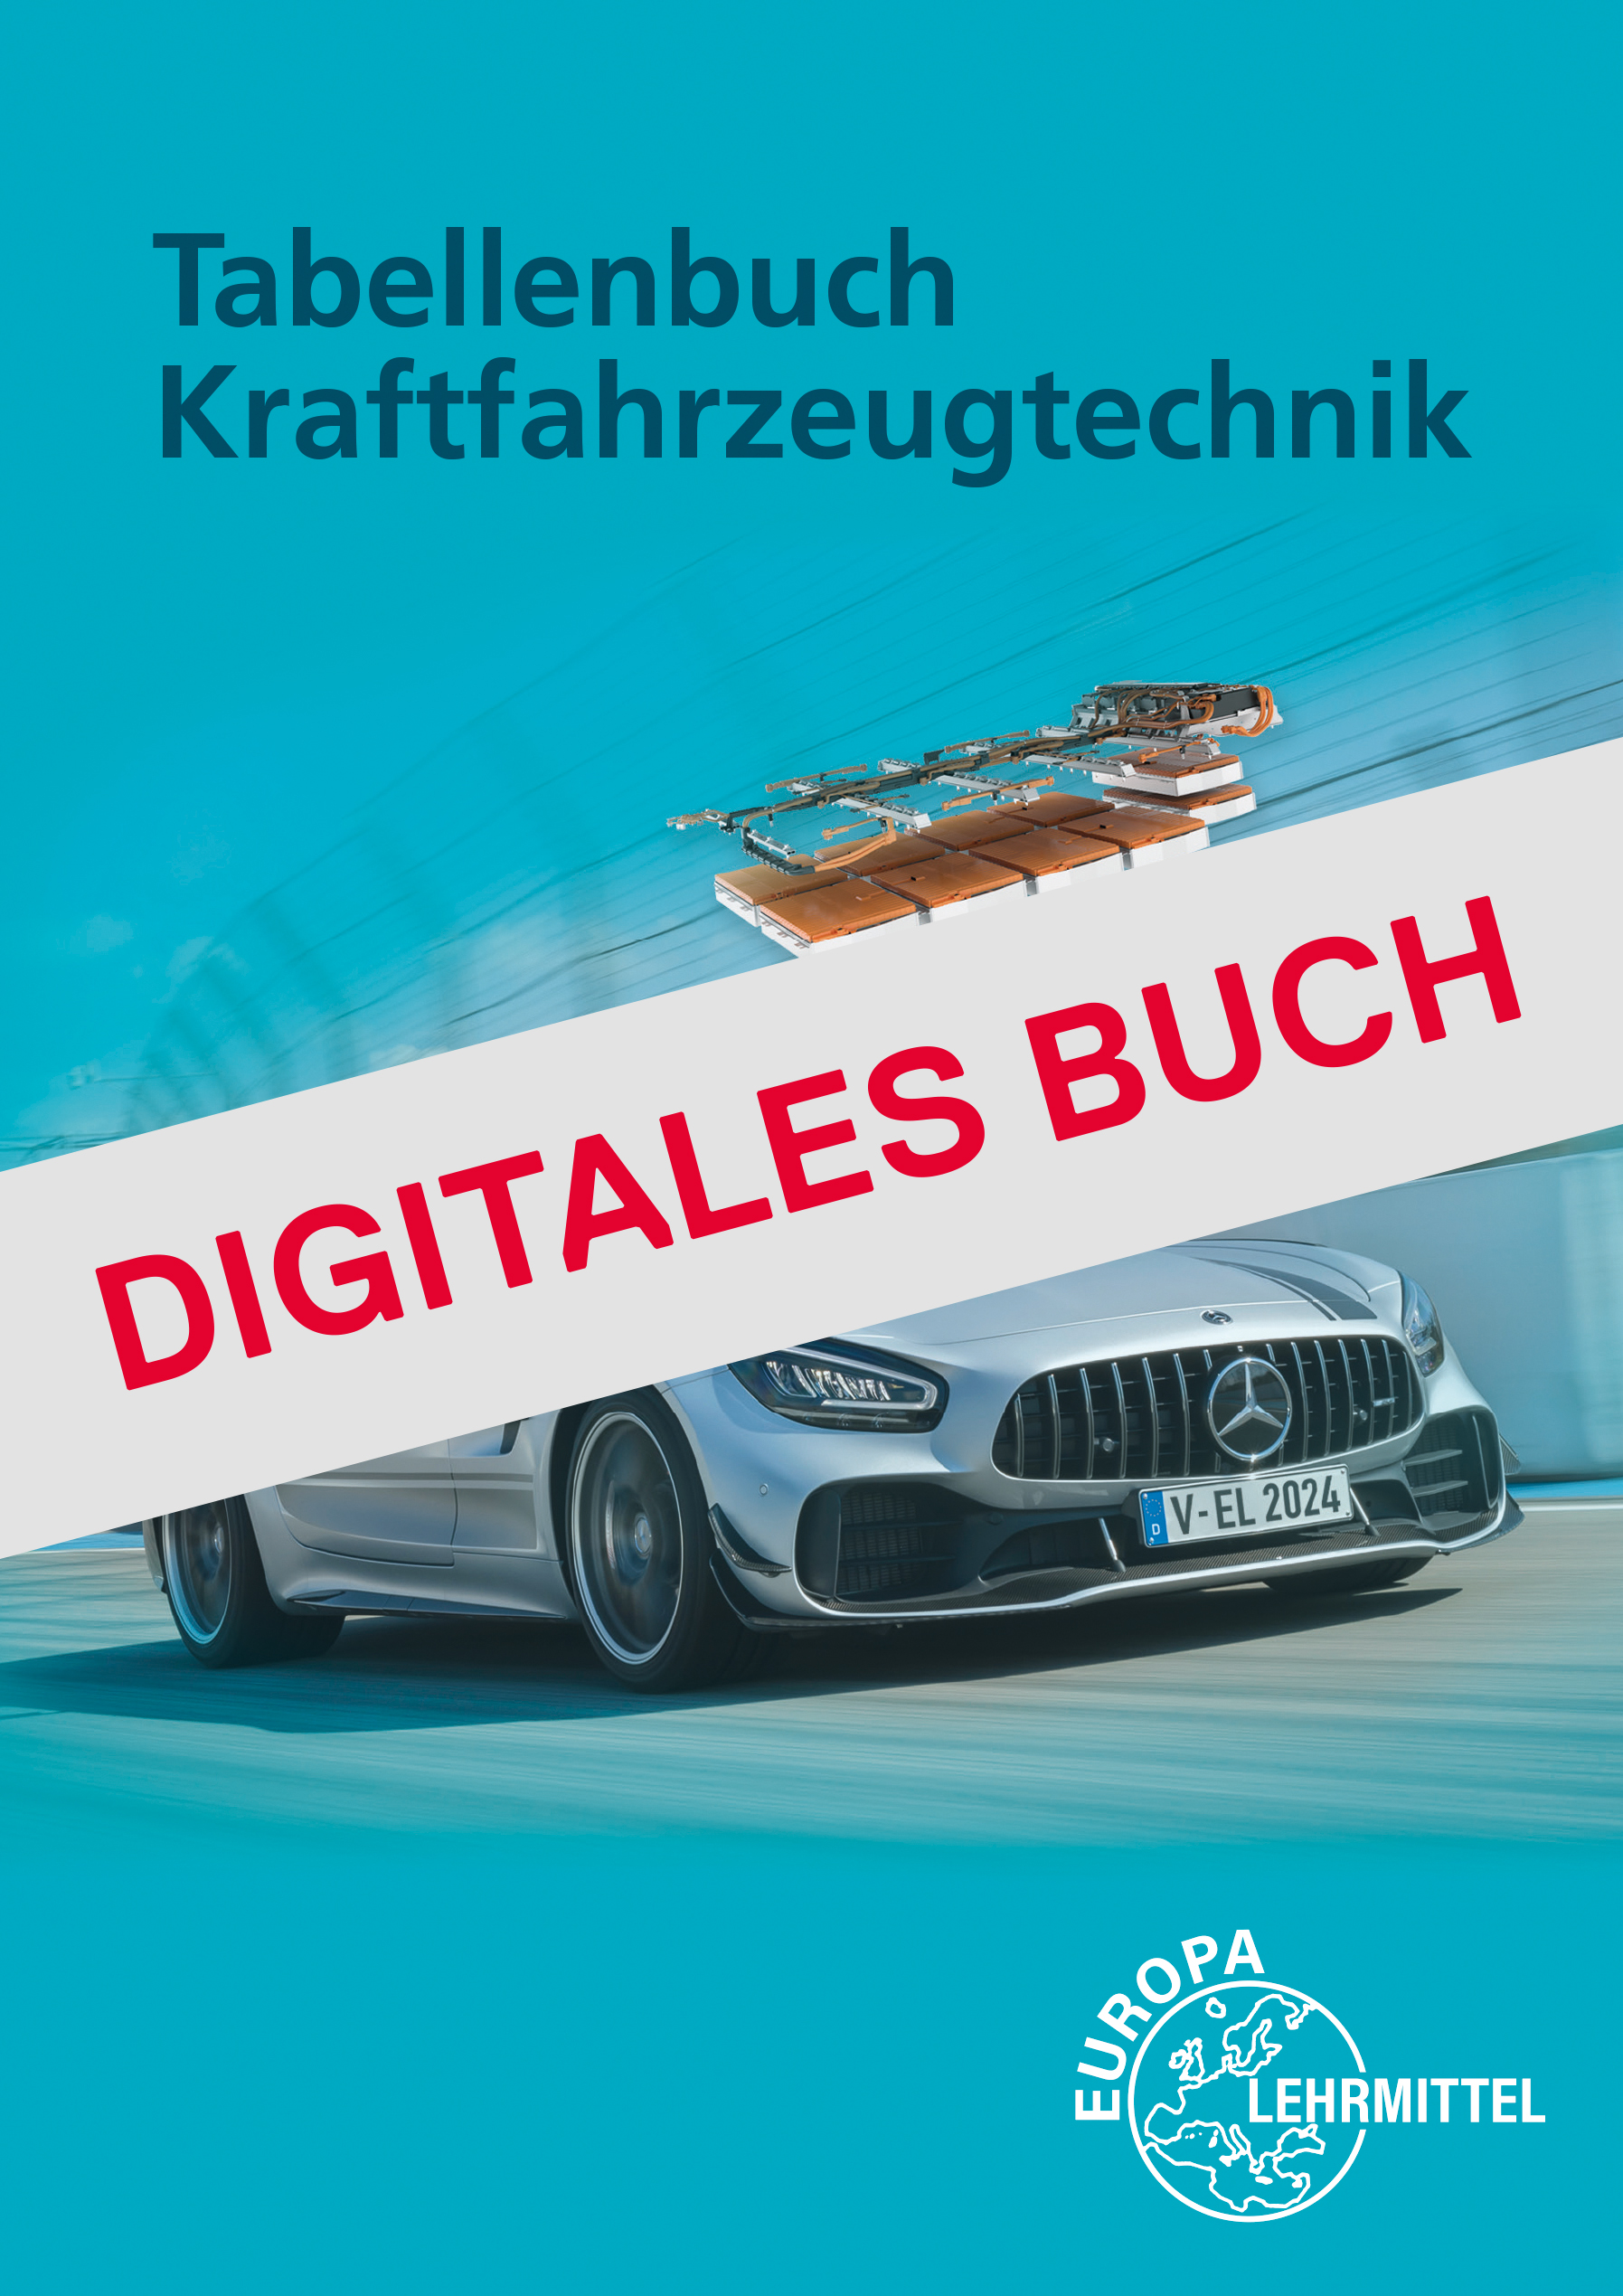 Tabellenbuch Kraftfahrzeugtechnik mit Formelsammlung Digitales Buch 